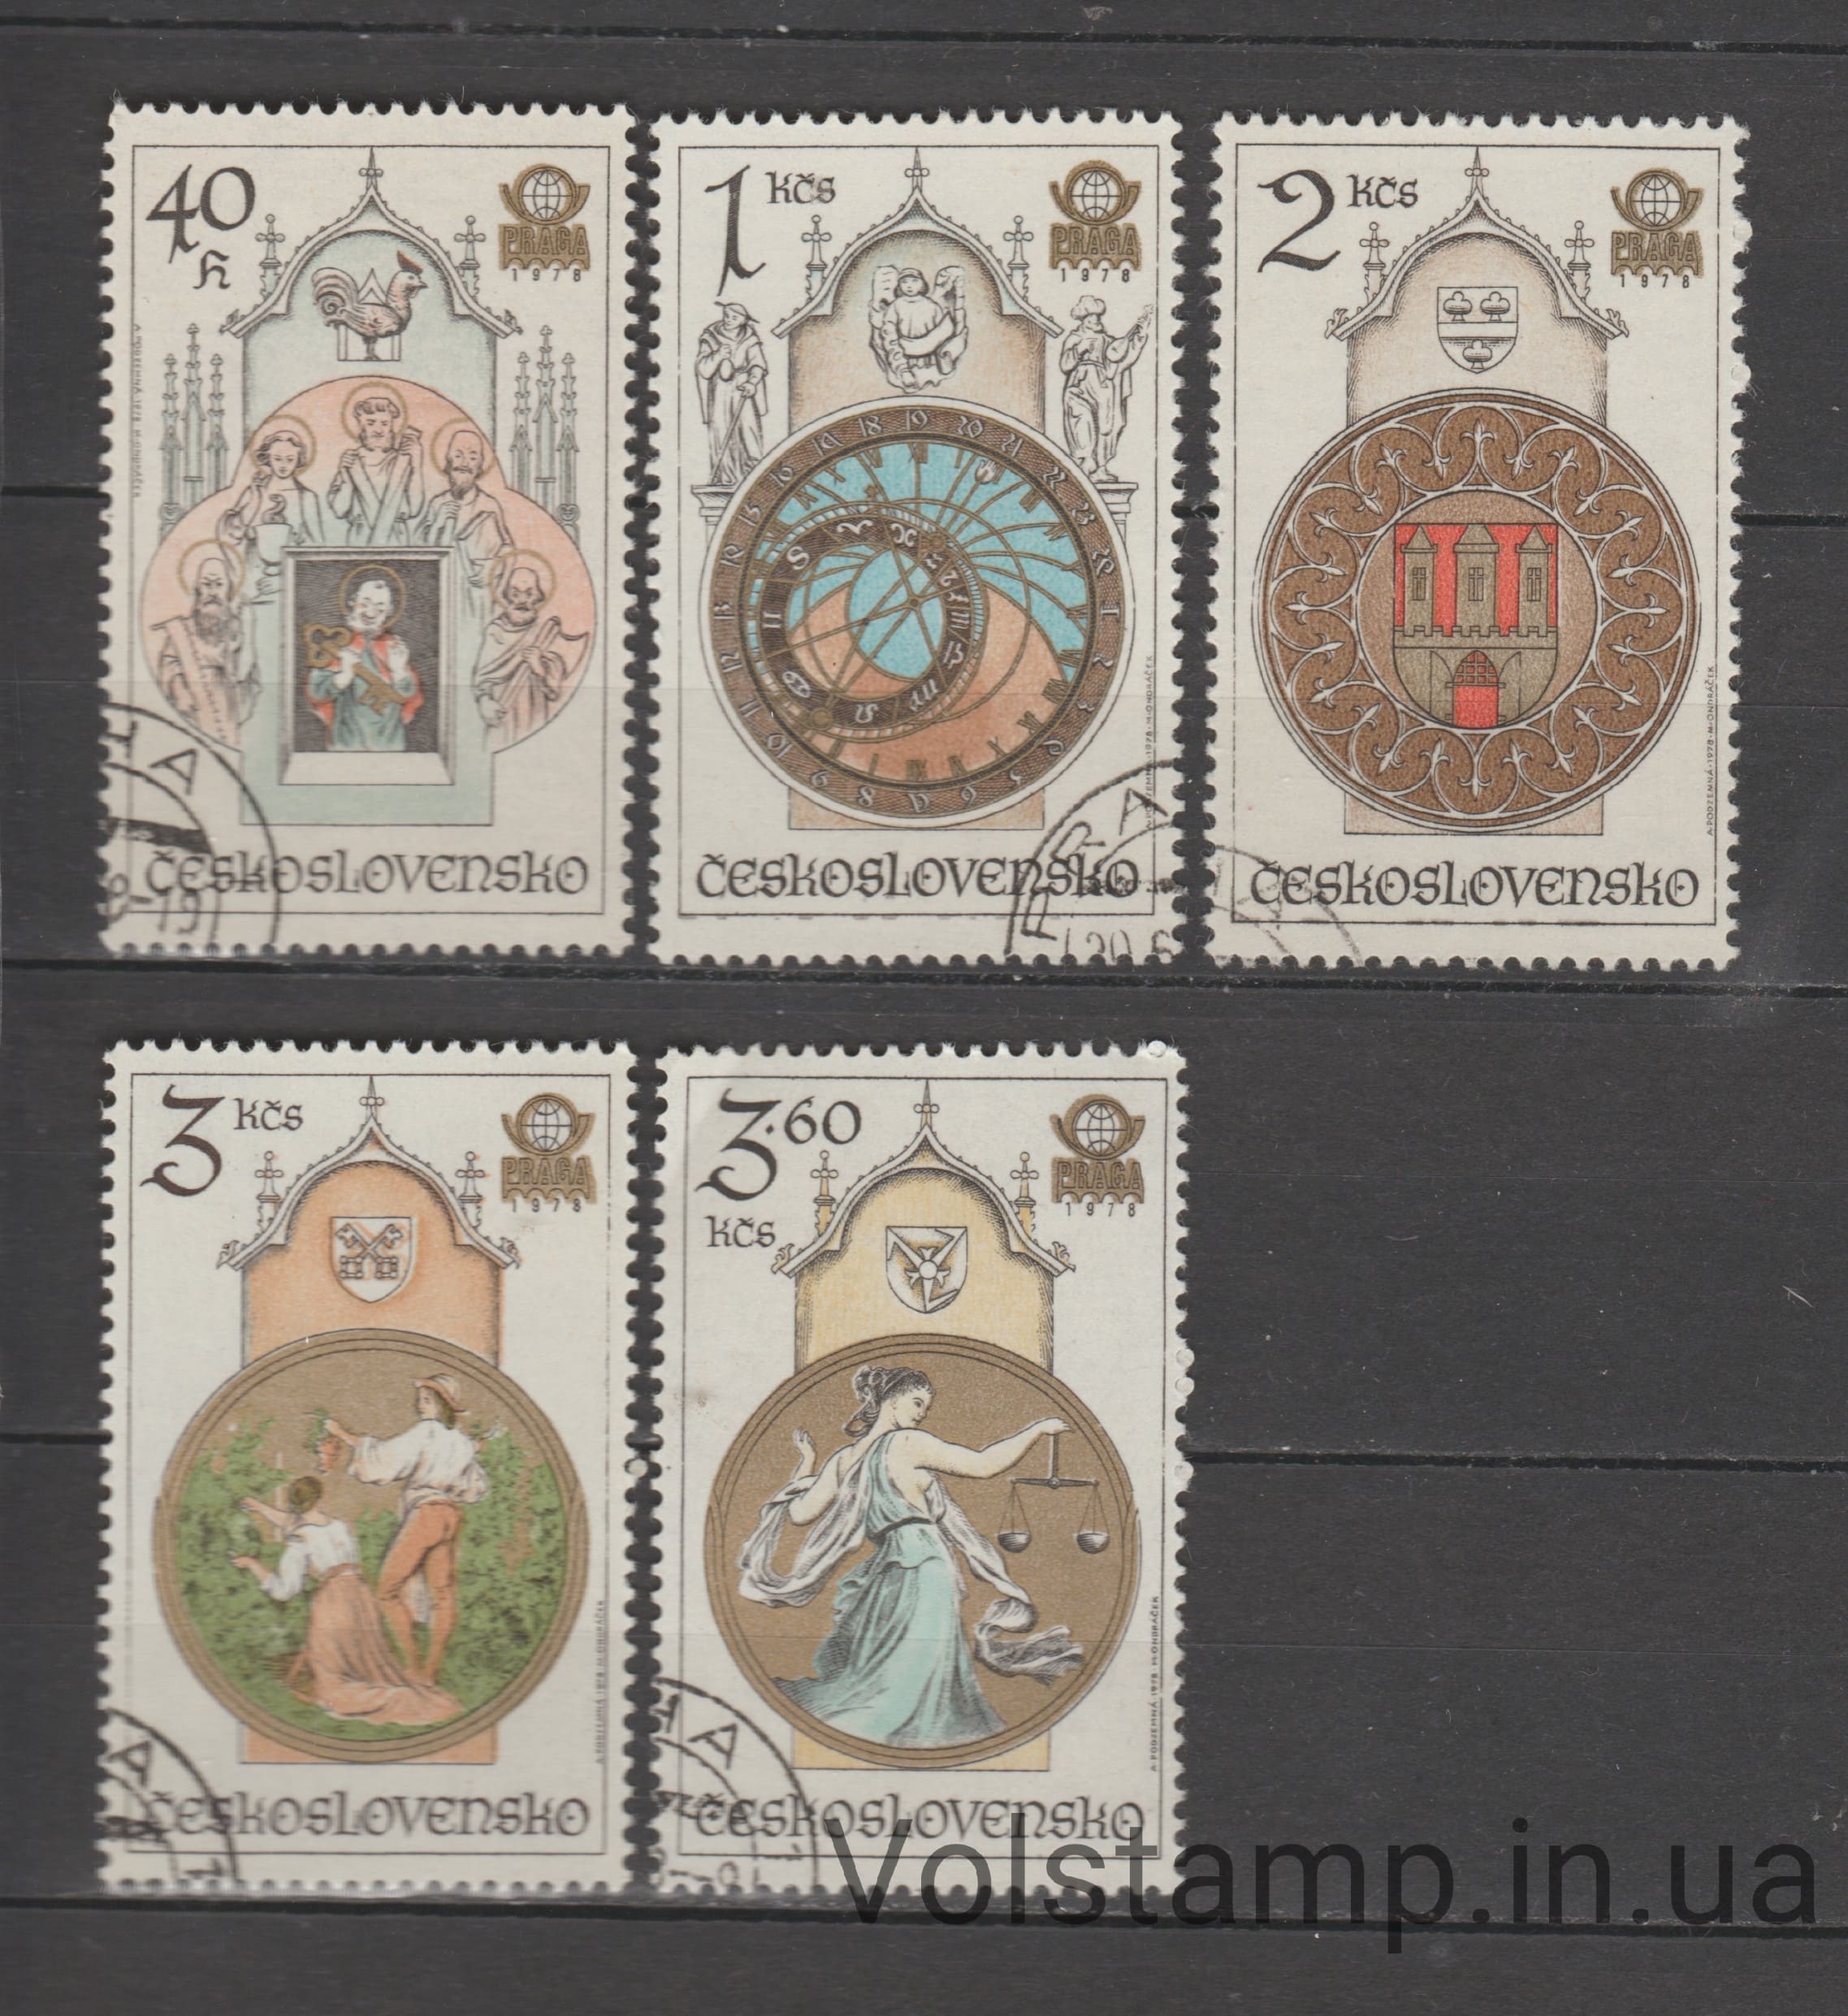 1978 Чехословакия Серия марок (Всемирная выставка марок ПРАГА-78 (VIII) – Староместские часы в Праге) Гашеные №2451-2455